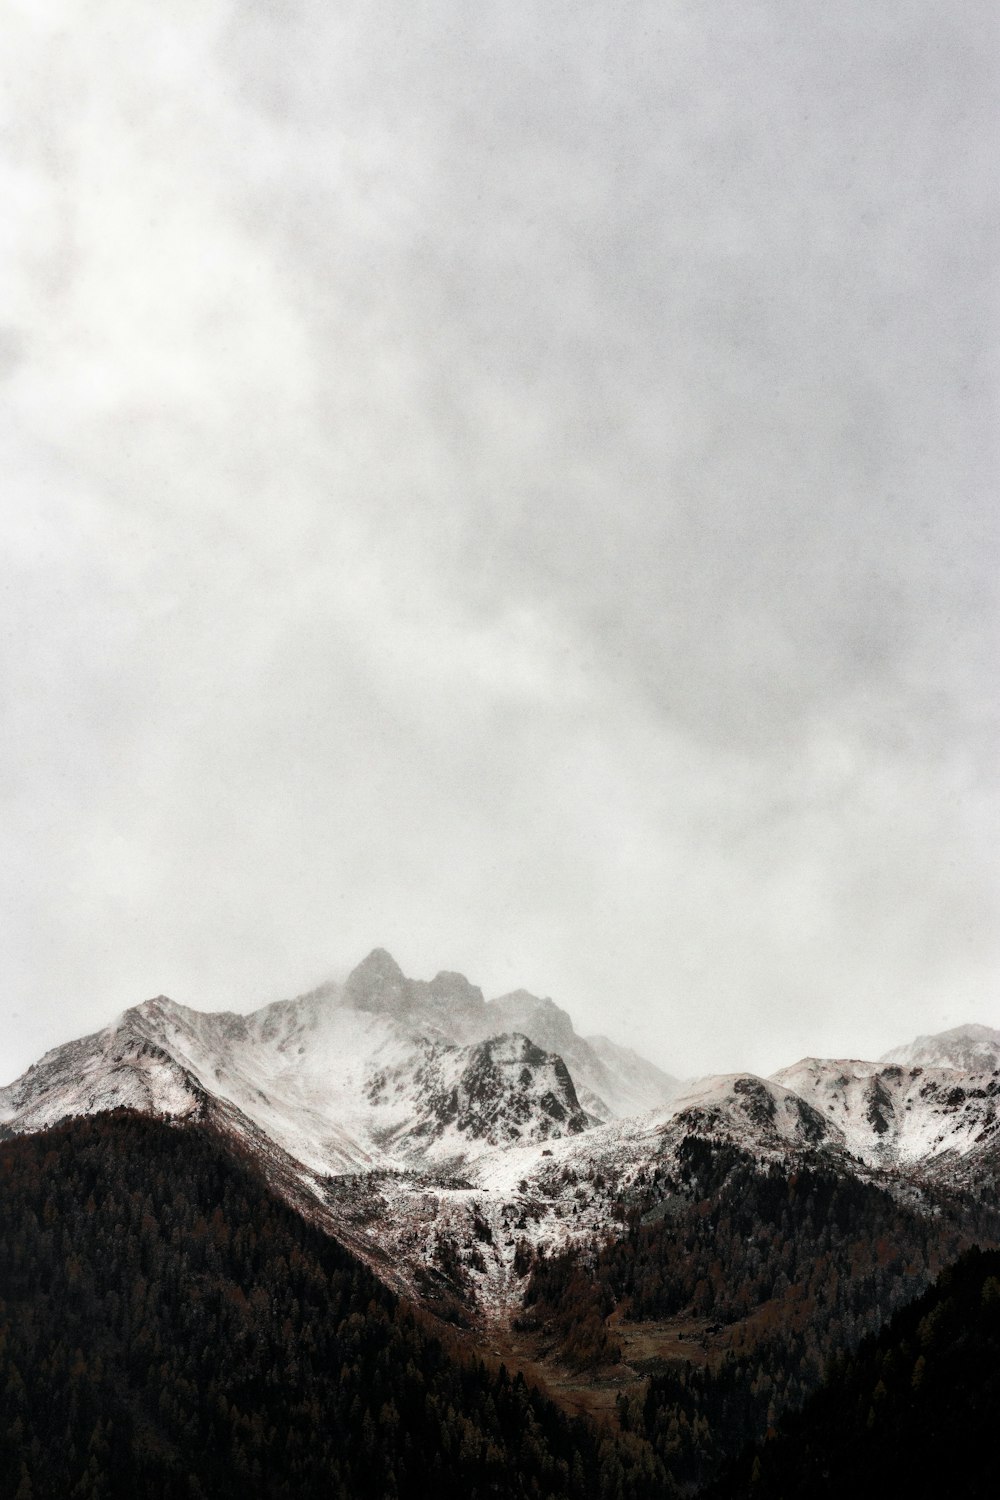 Montaña de casquete helado bajo el cielo gris durante la fotografía diurna